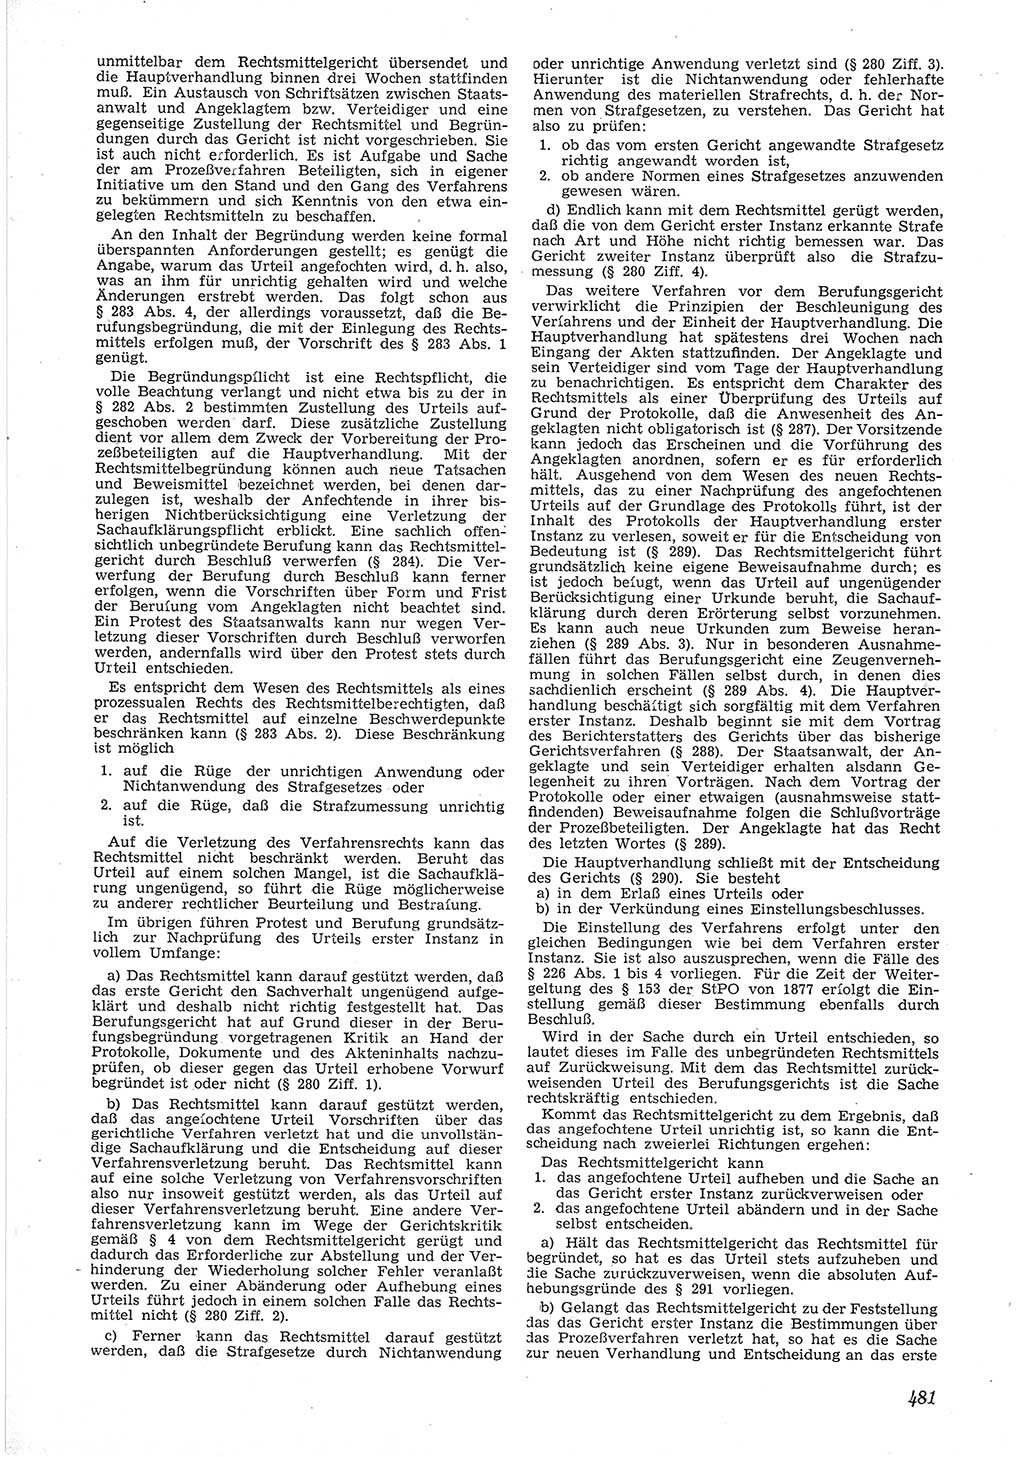 Neue Justiz (NJ), Zeitschrift für Recht und Rechtswissenschaft [Deutsche Demokratische Republik (DDR)], 6. Jahrgang 1952, Seite 481 (NJ DDR 1952, S. 481)